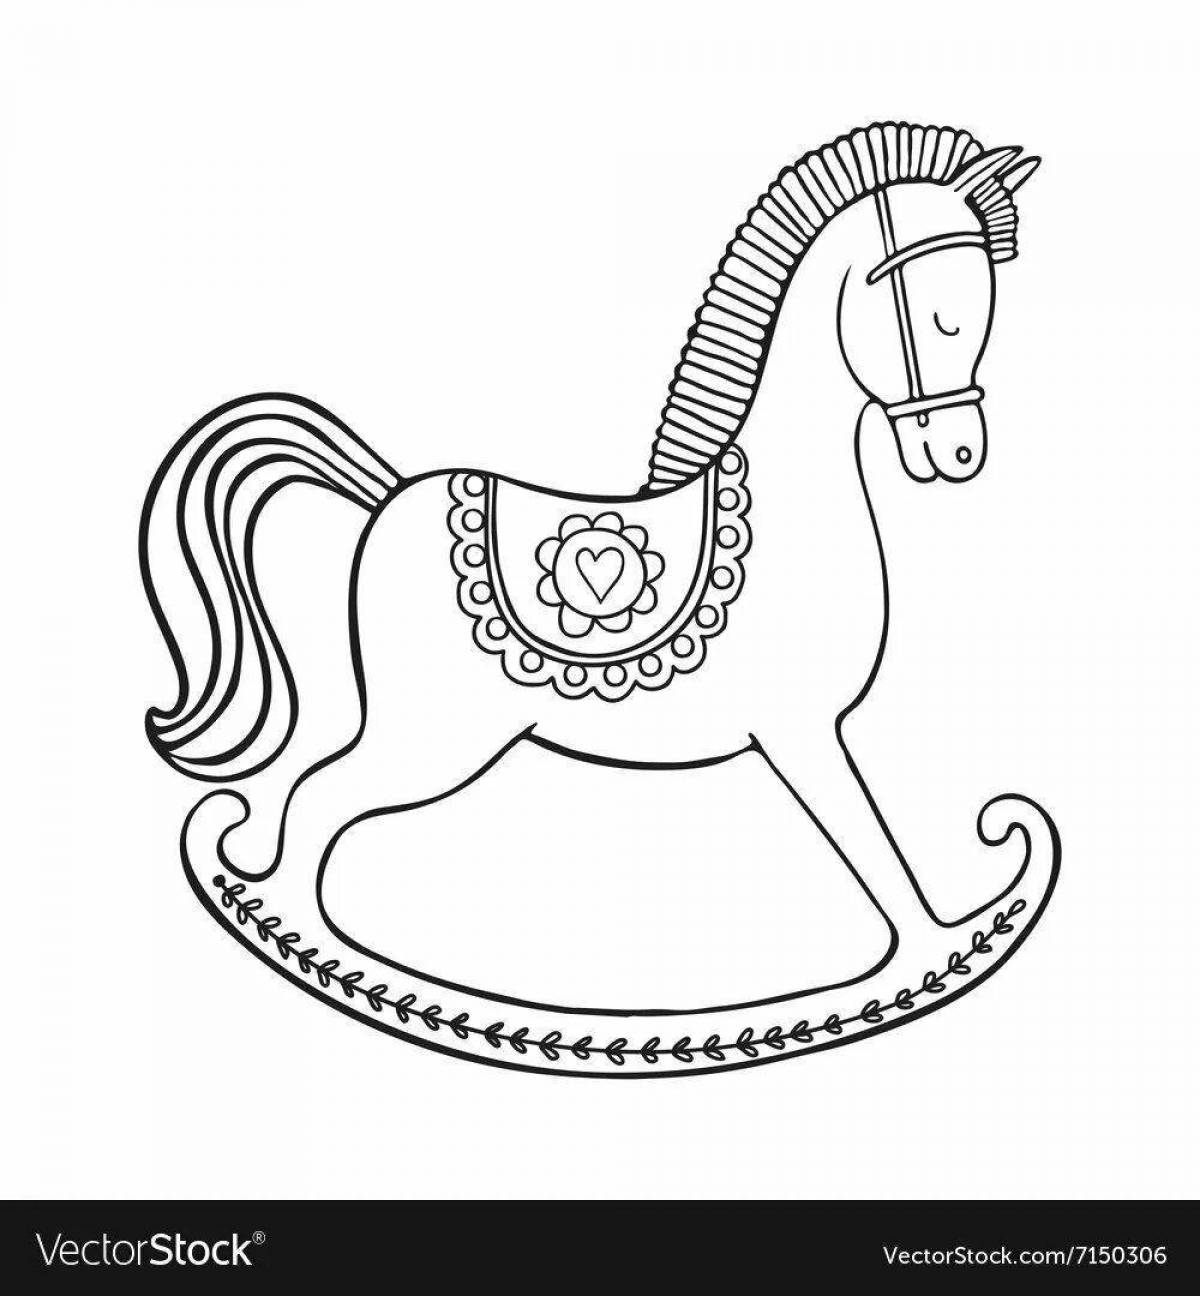 Причудливая лошадка-качалка раскраска для дошкольников